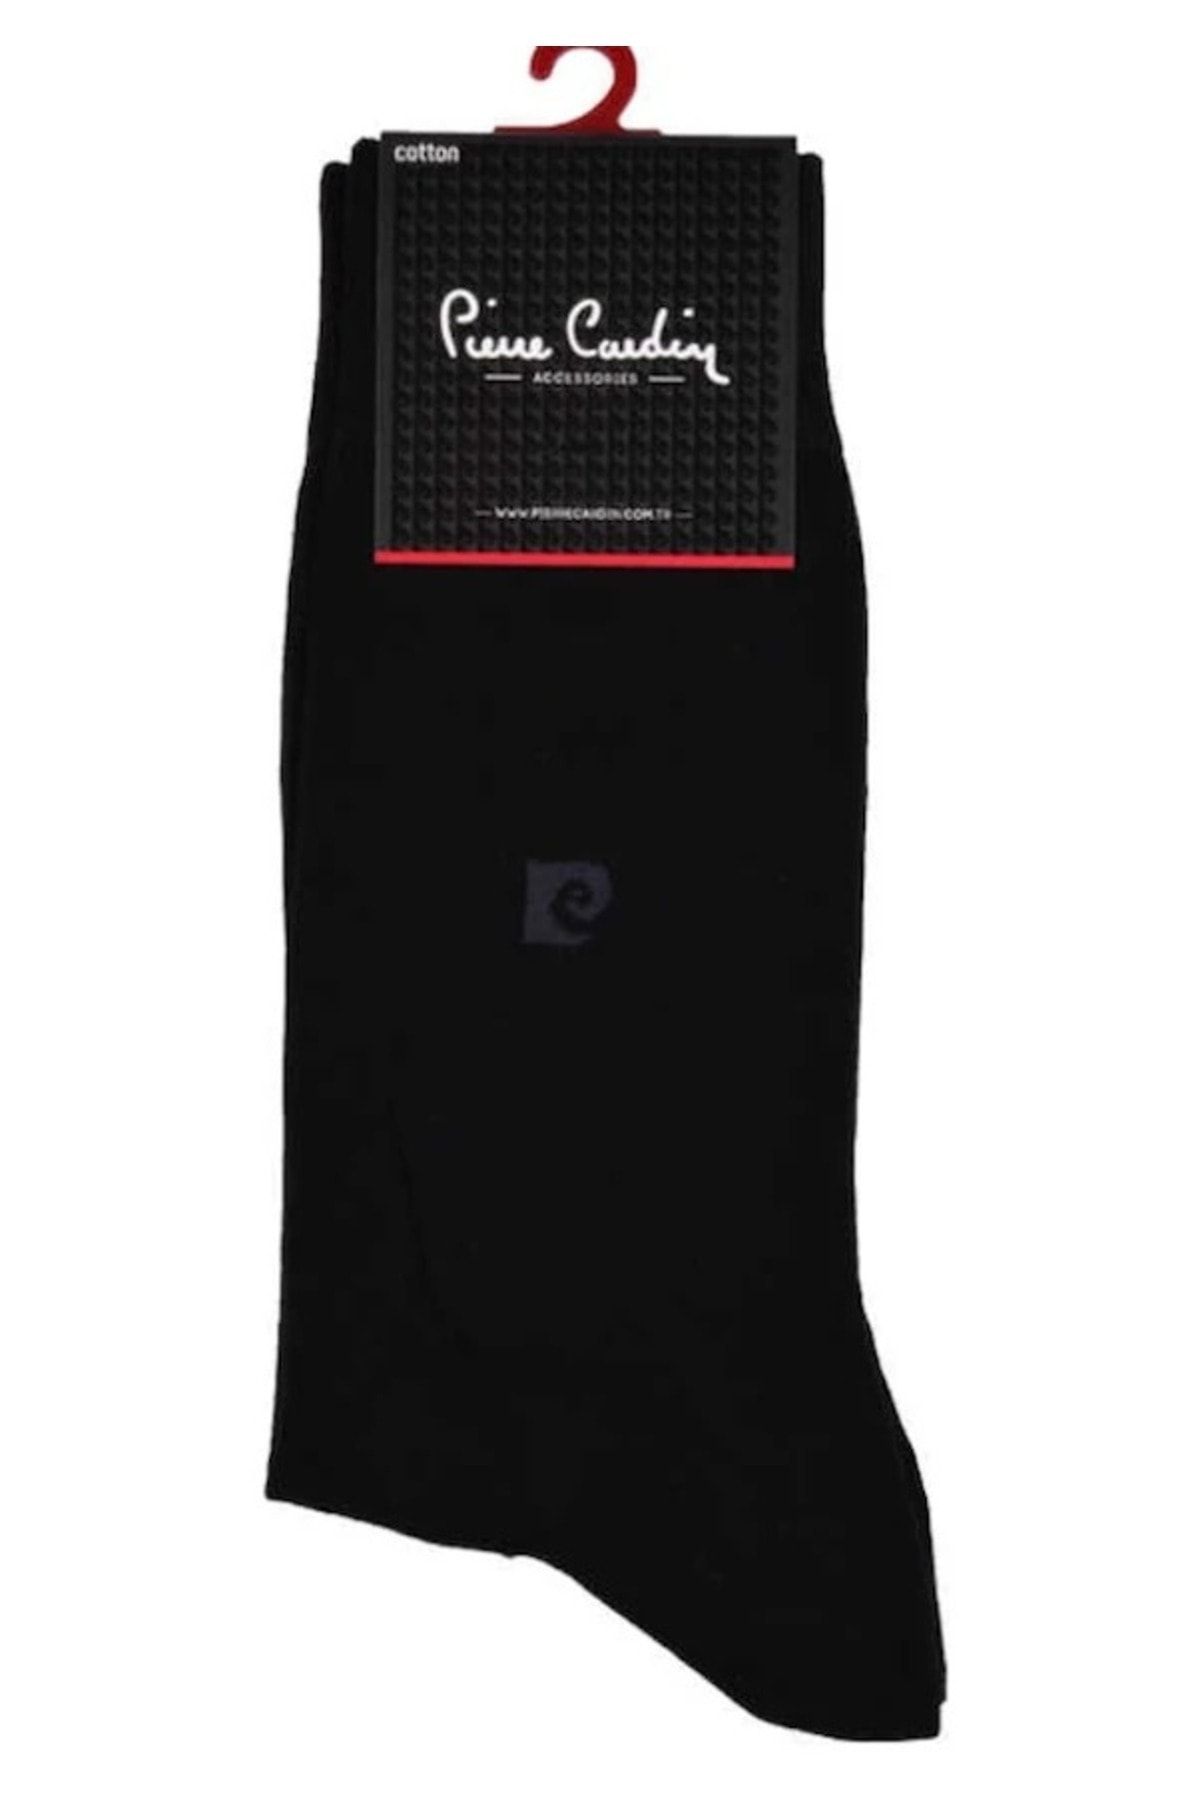 Pierre Cardin erkek çorap